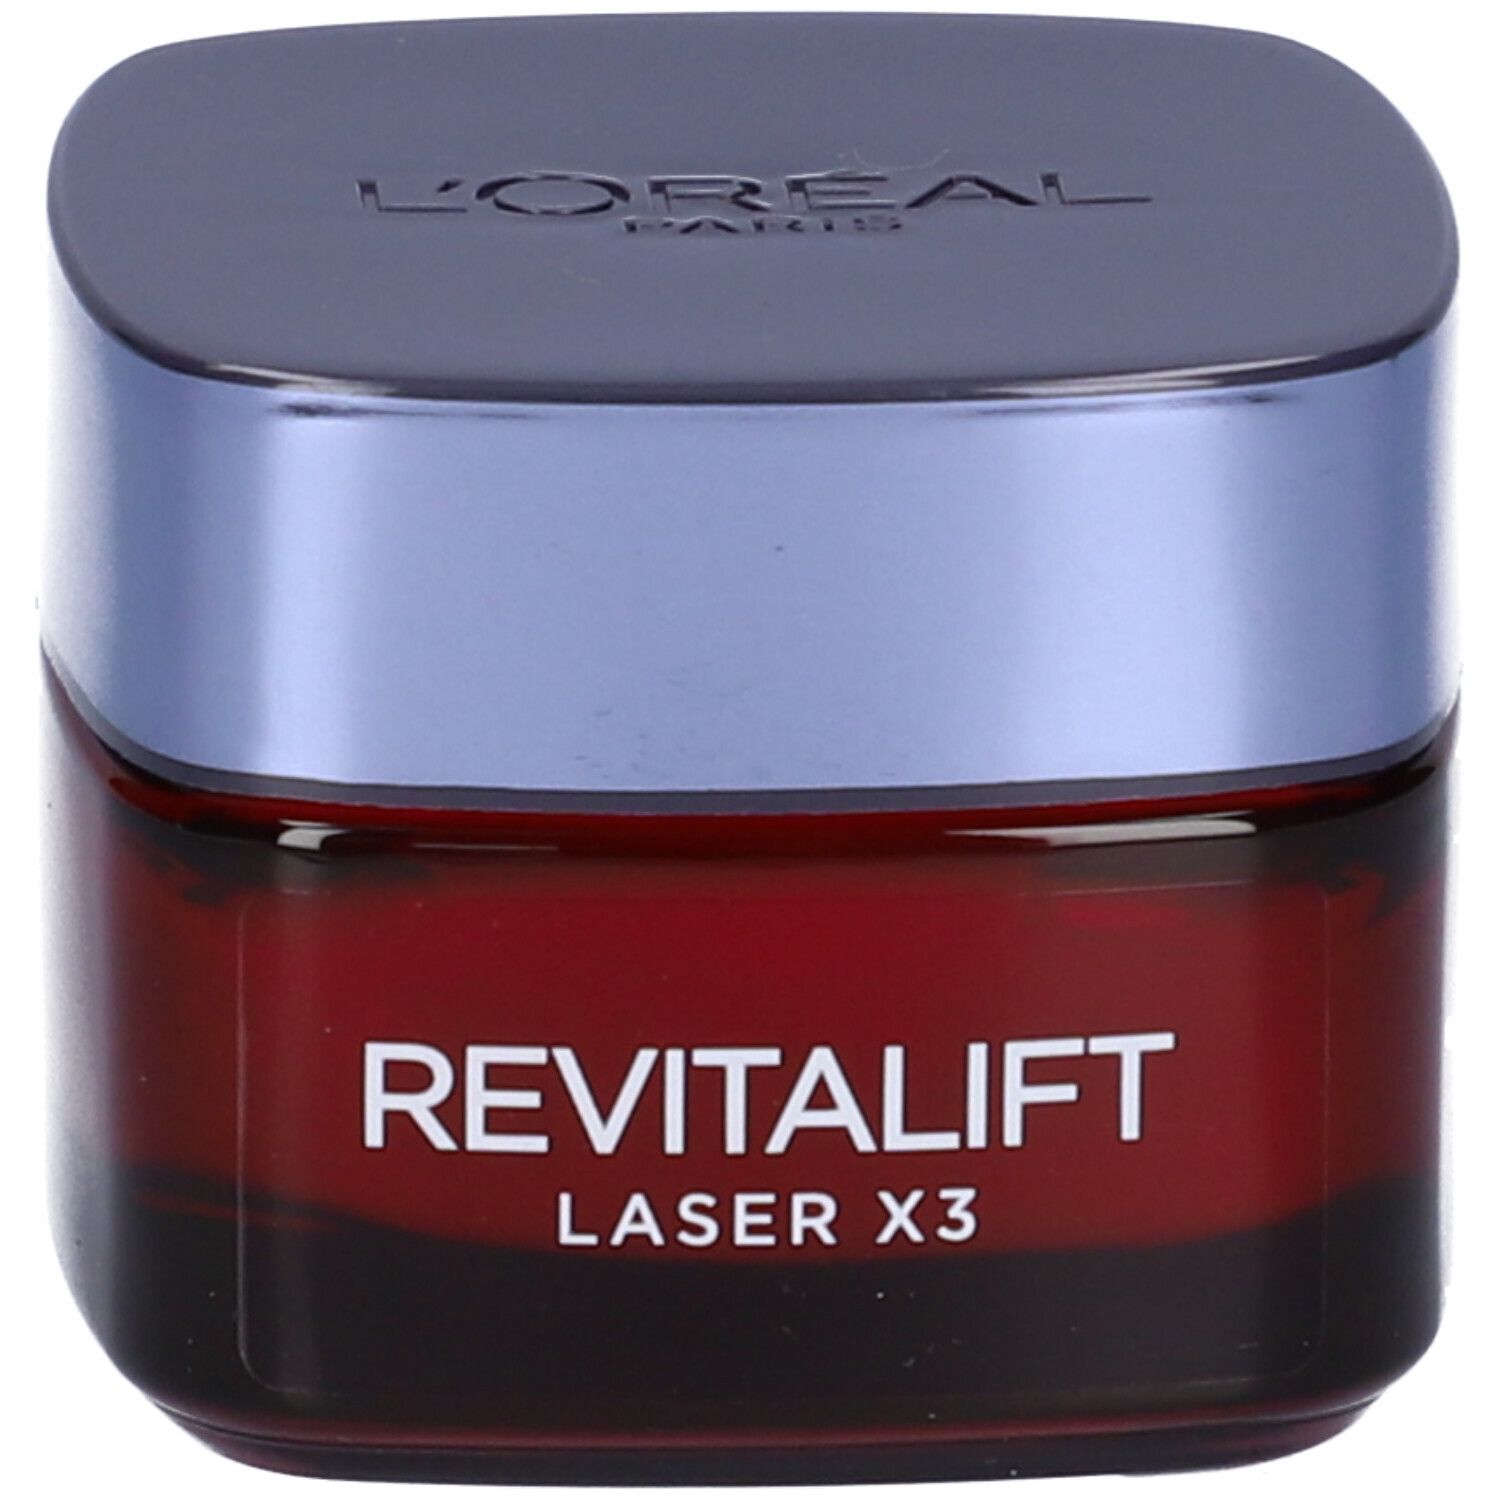 Image of L'Oréal Paris Crema Viso Giorno Revitalift Laser X3, Azione Antirughe Anti-Età con Acido Ialuronico e Pro-Xylane, 50 ml